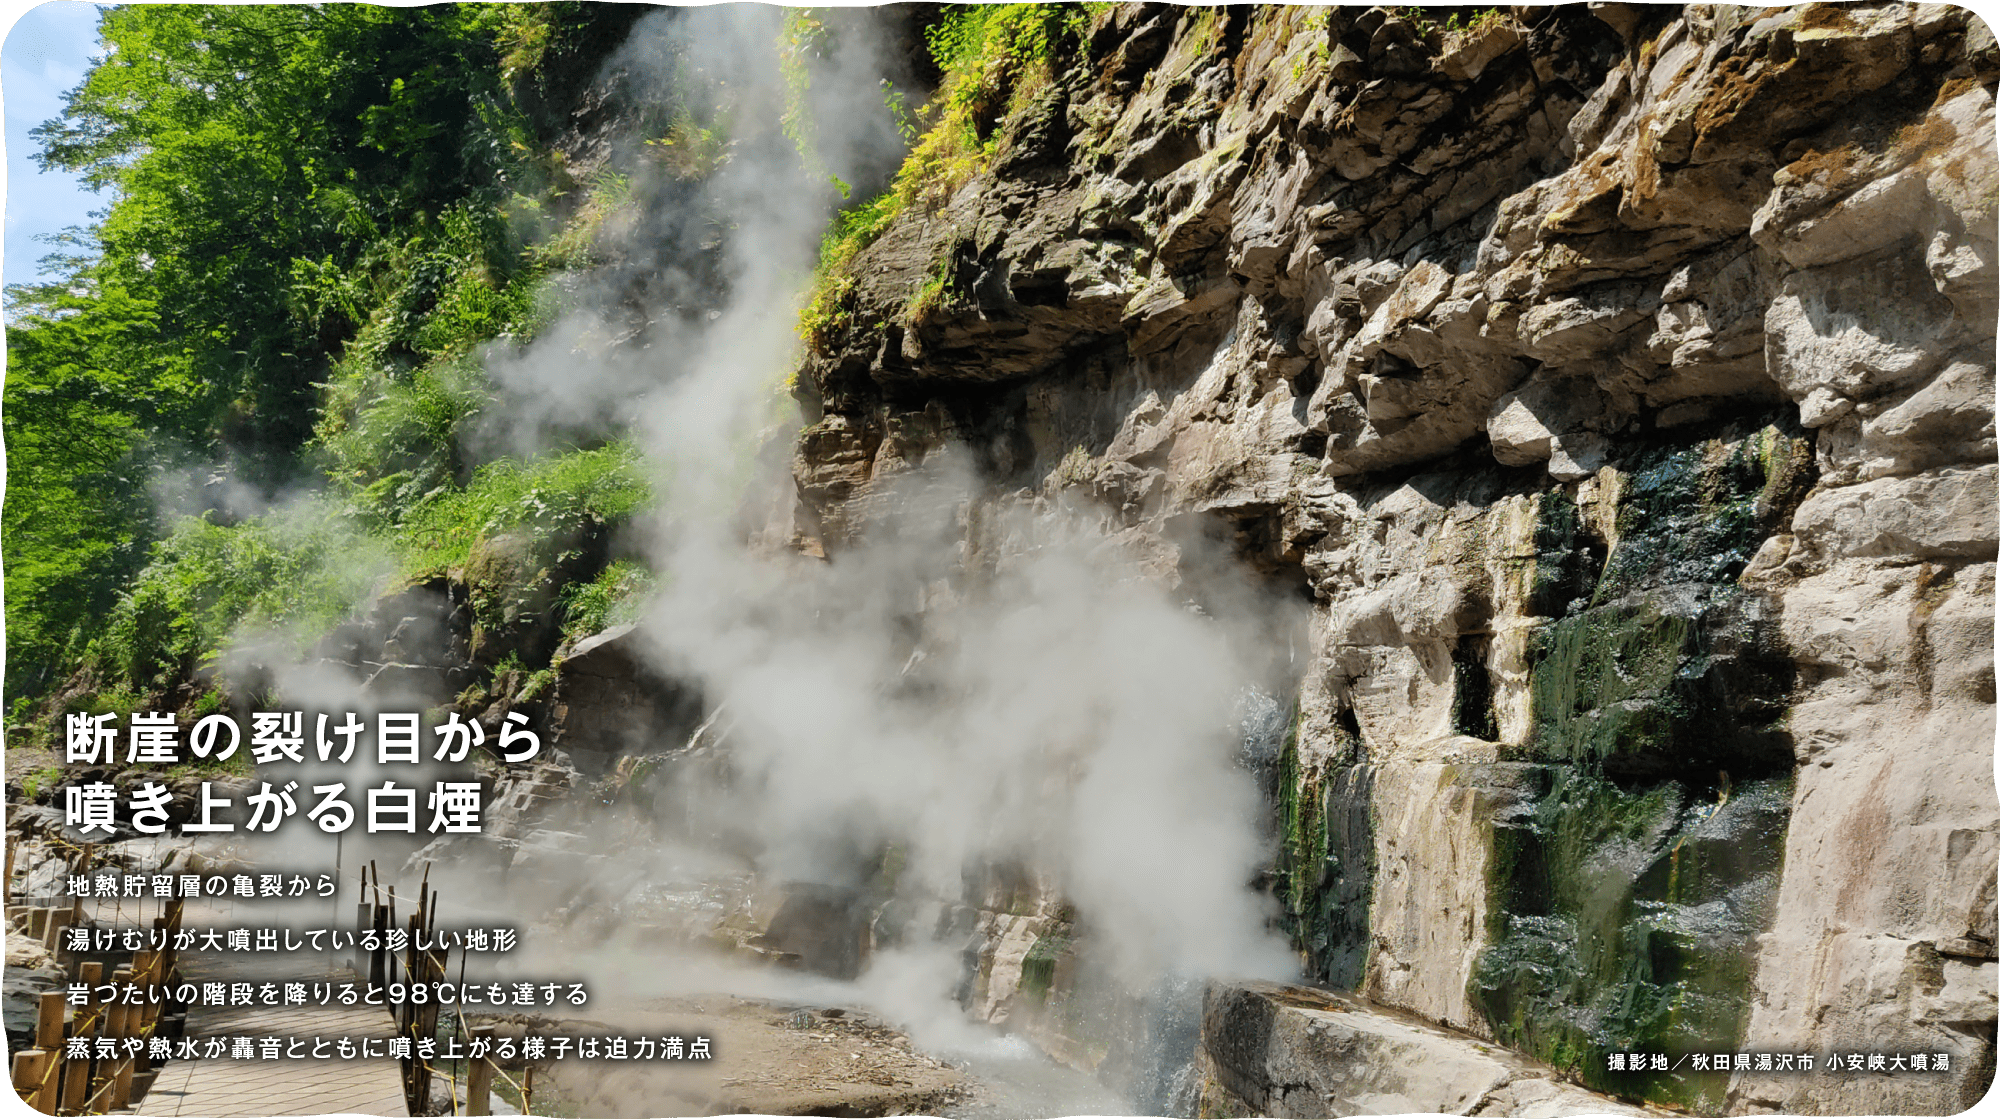 断崖の裂け目から噴き上がる白煙　地熱貯留層の亀裂から湯けむりが大噴出している珍しい地形岩づたいの階段を降りると98℃にも達する蒸気や熱水が轟音とともに噴き上がる様子は迫力満点